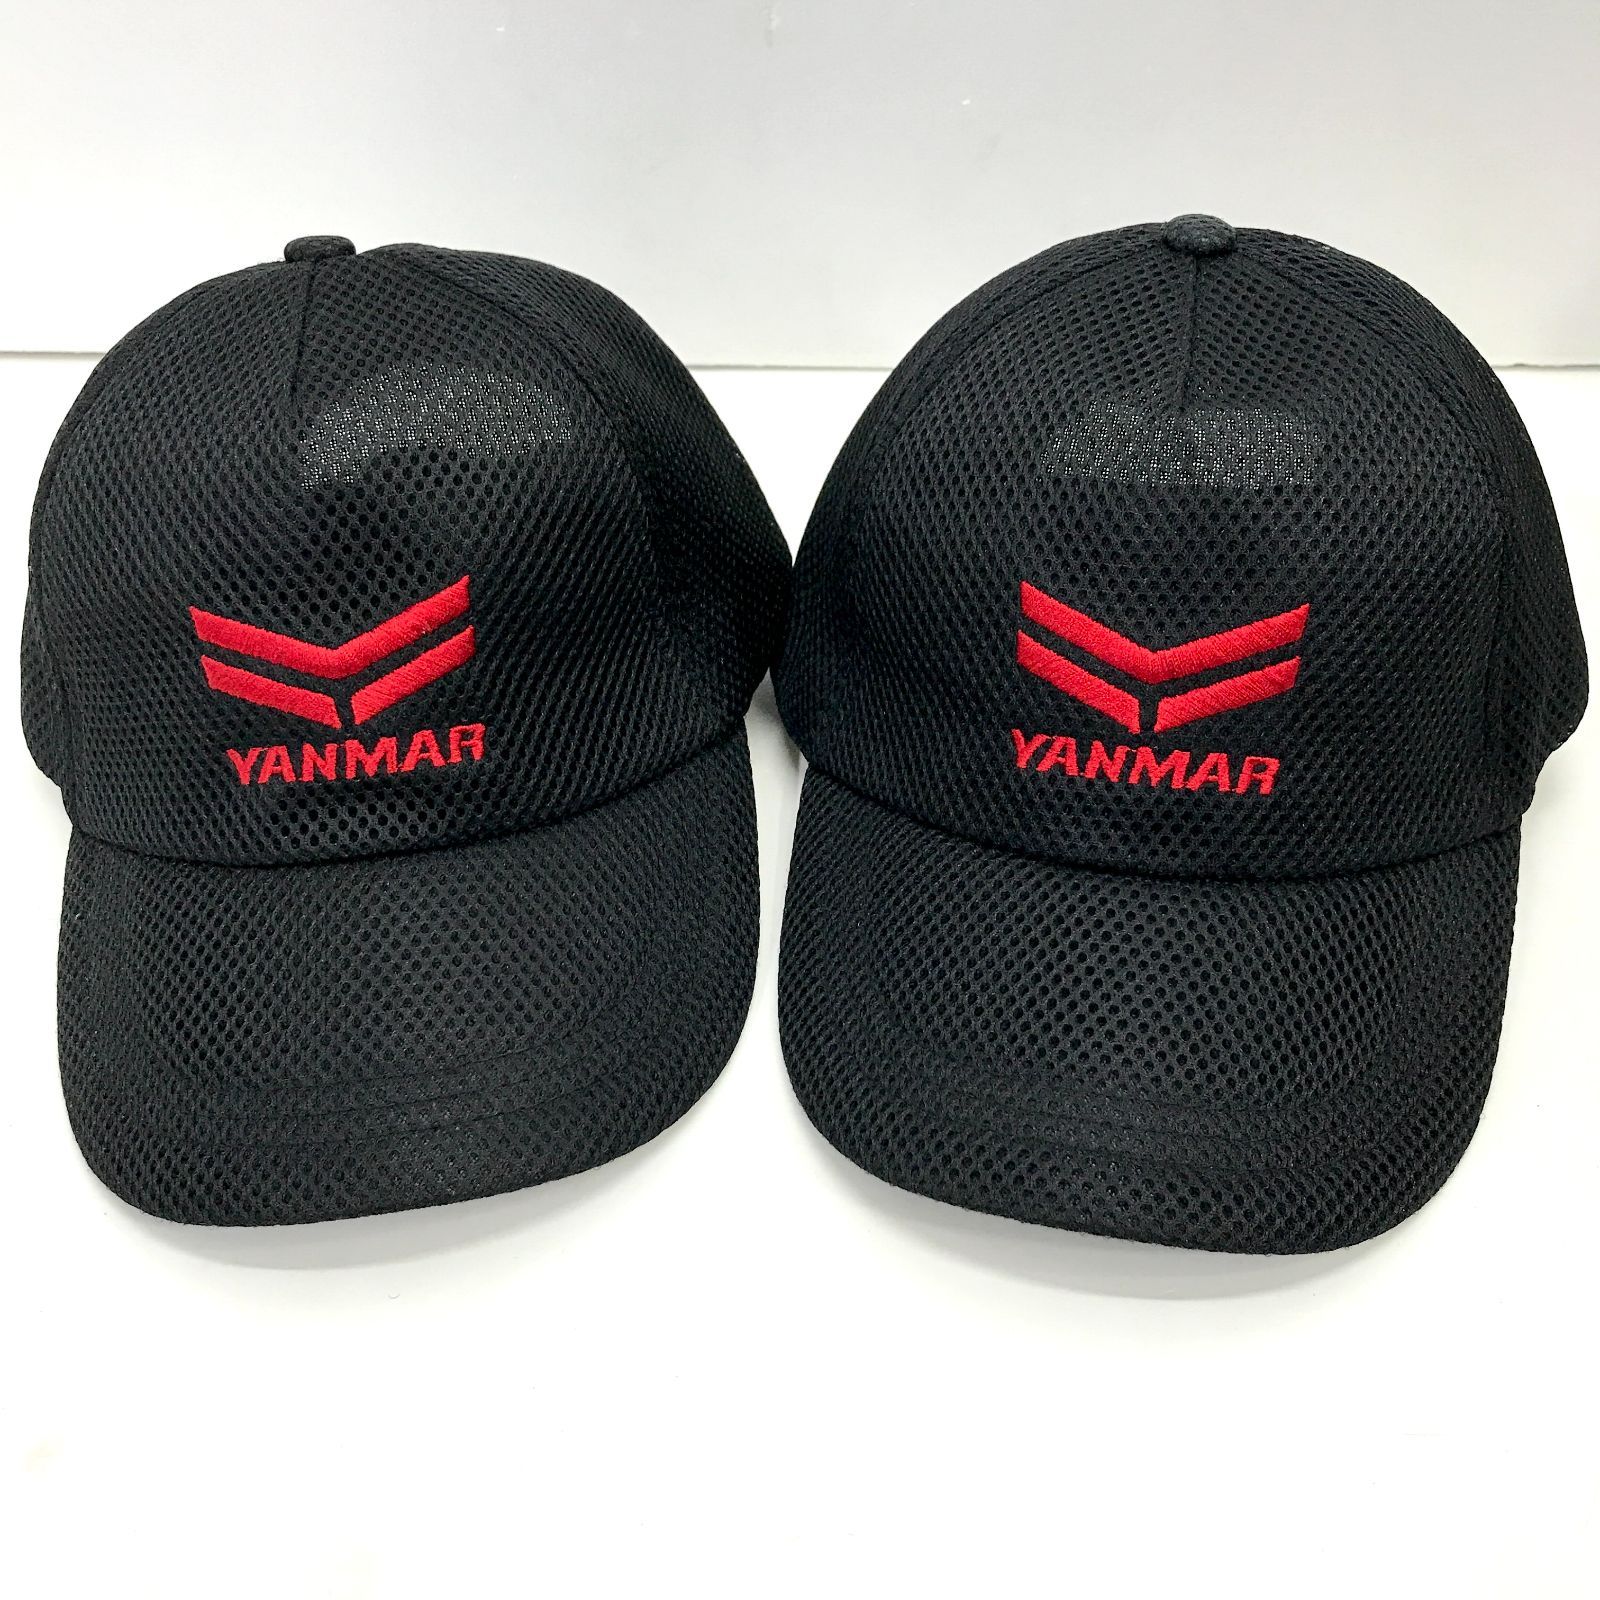 【01】未使用品 YANMAR ヤンマー メッシュキャップ 2点セット(01-5742)